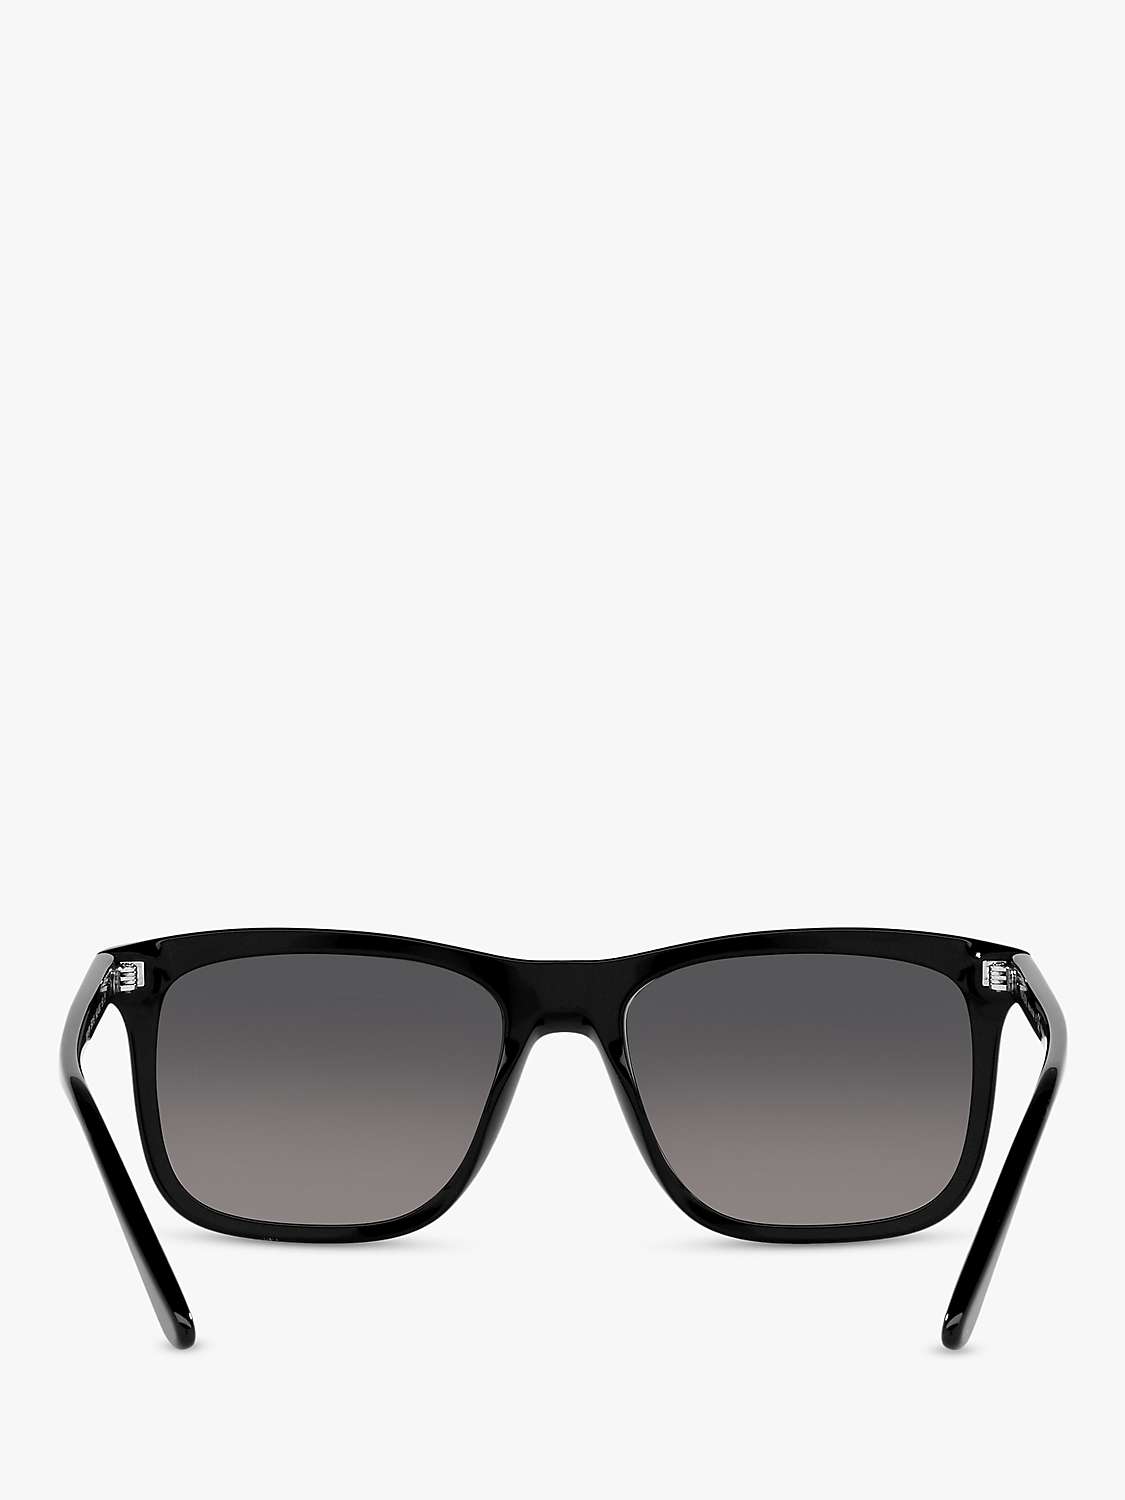 Buy Prada PR 18WS Men's Rectangular Polarised Sunglasses, Black/Grey Gradient Online at johnlewis.com